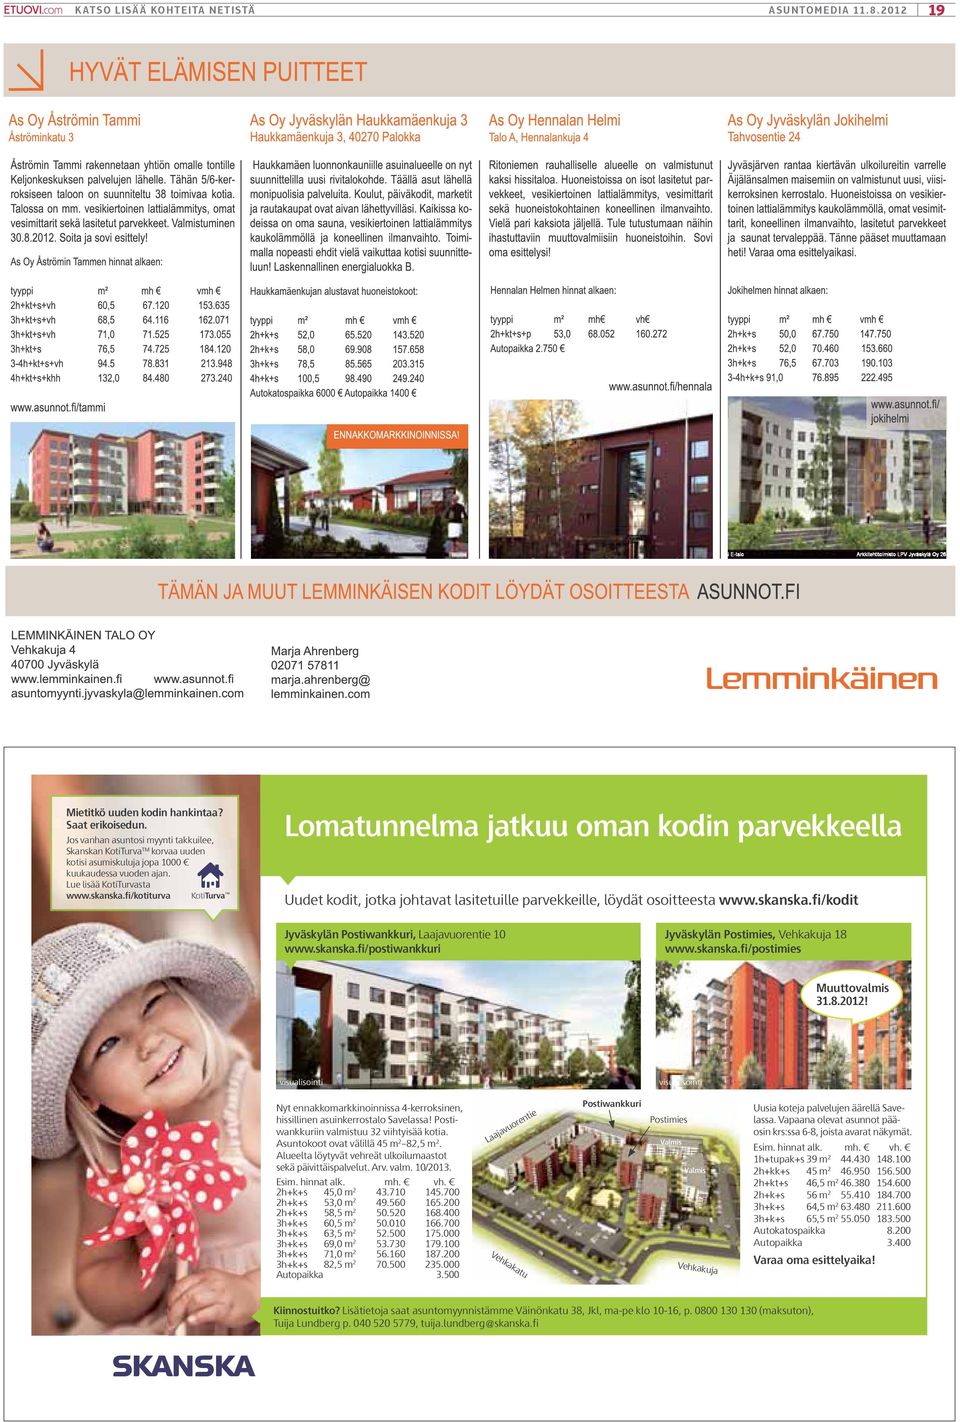 skanska.fi/postiwankkuri Jyväskylän Postimies, Vehkakuja 18 www.skanska.fi/postimies Muuttovalmis 31.8.2012!